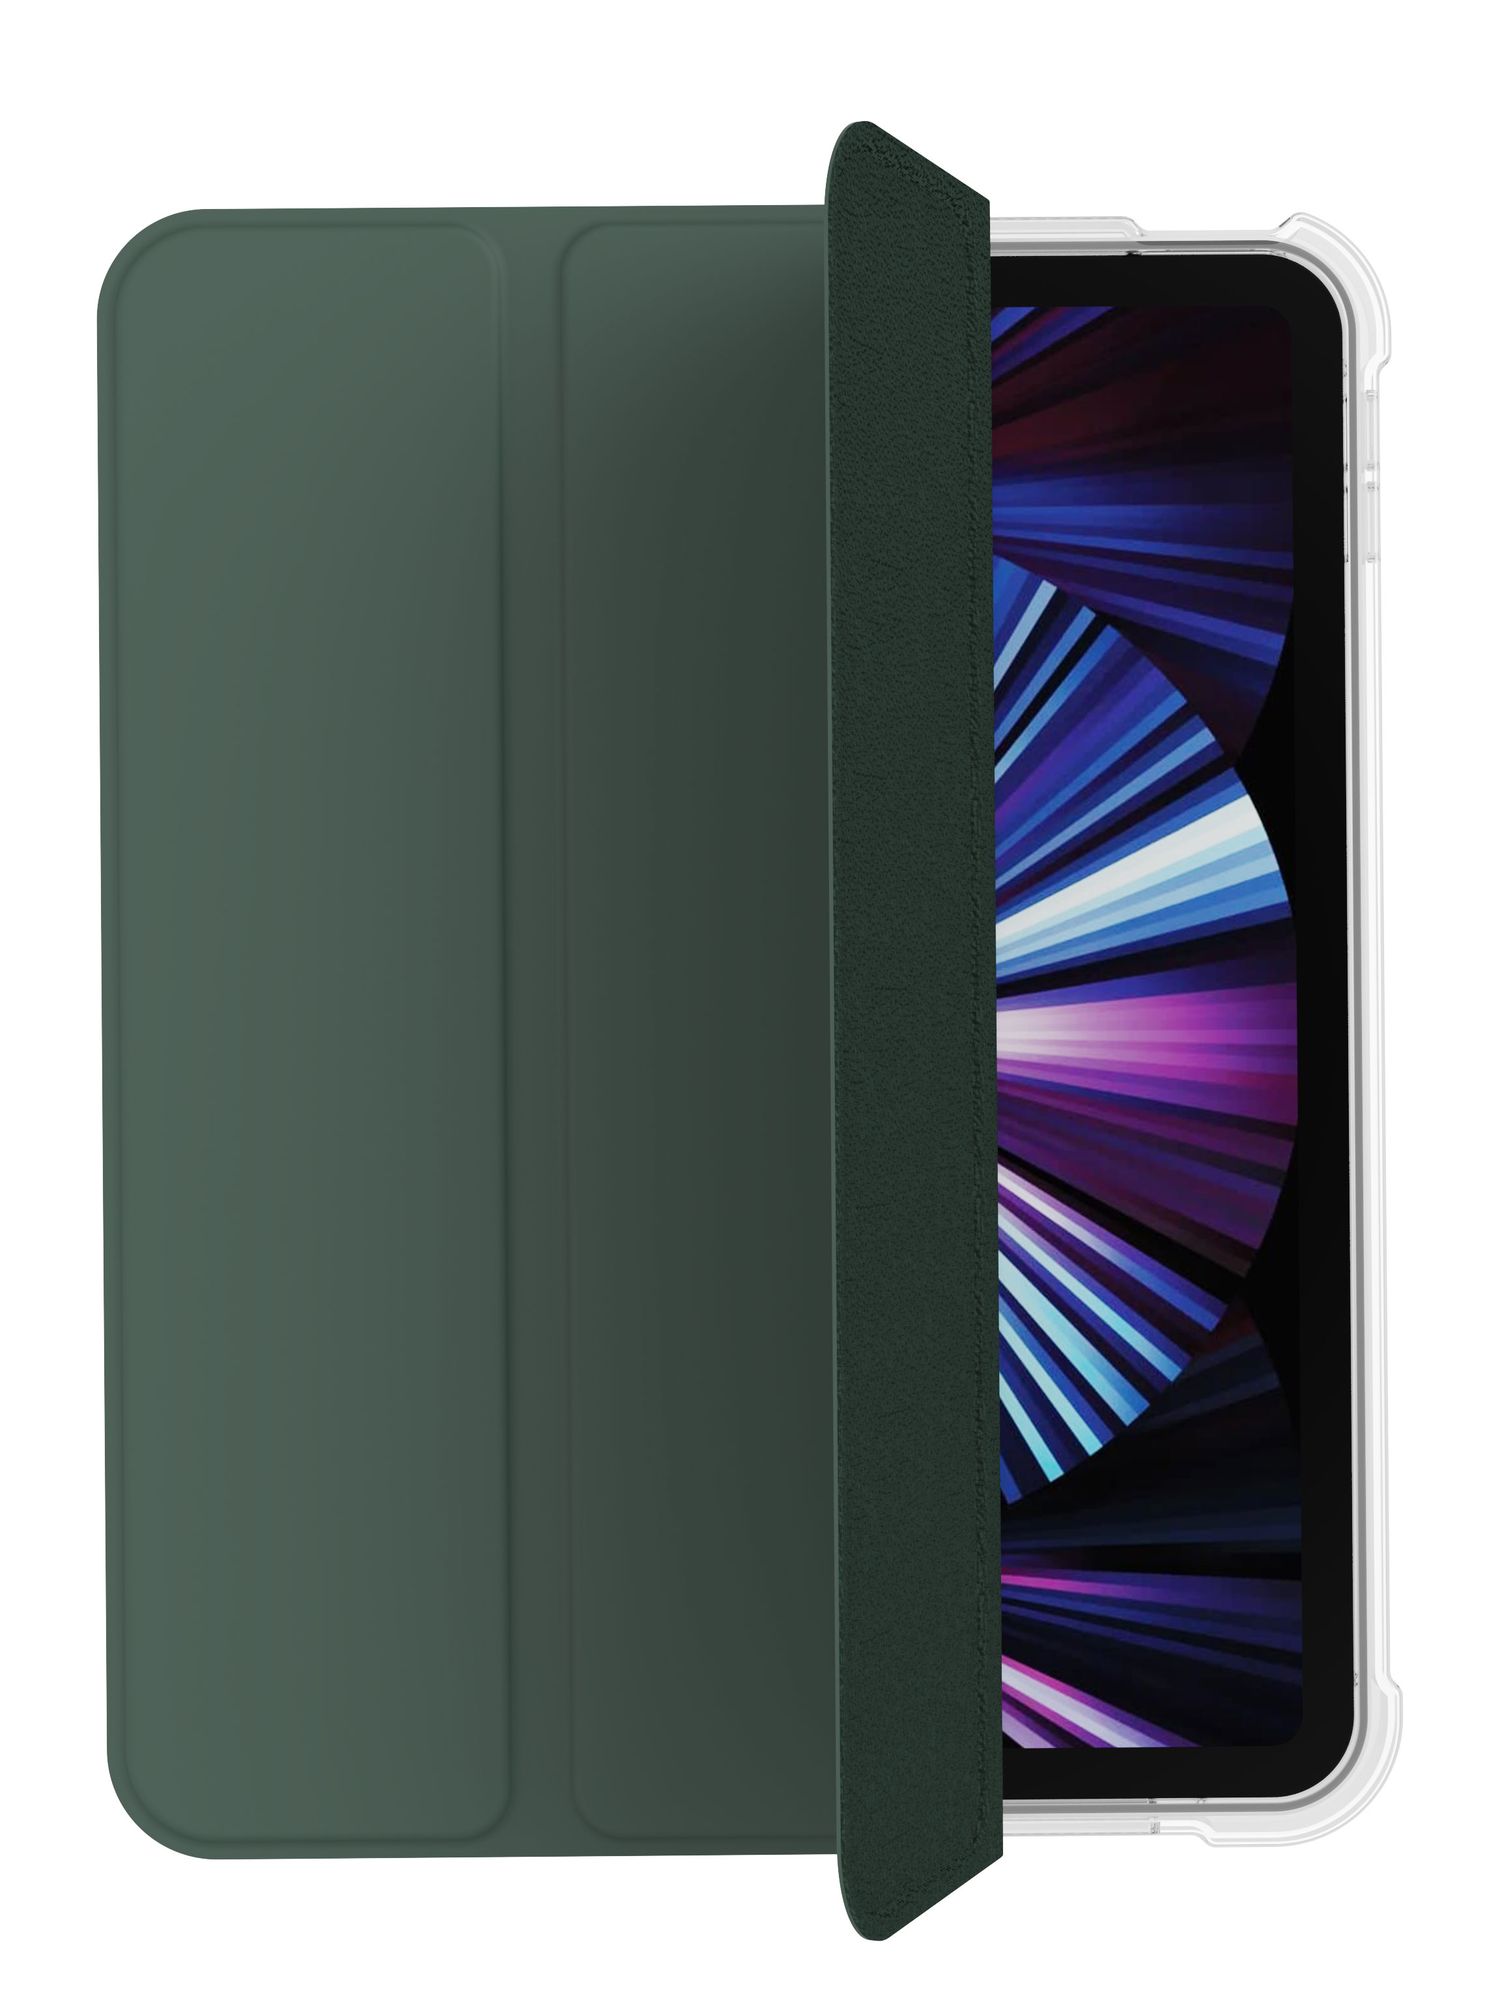 Чехол защитный "vlp" Dual Folio Case для iPad 10, темно-зеленый